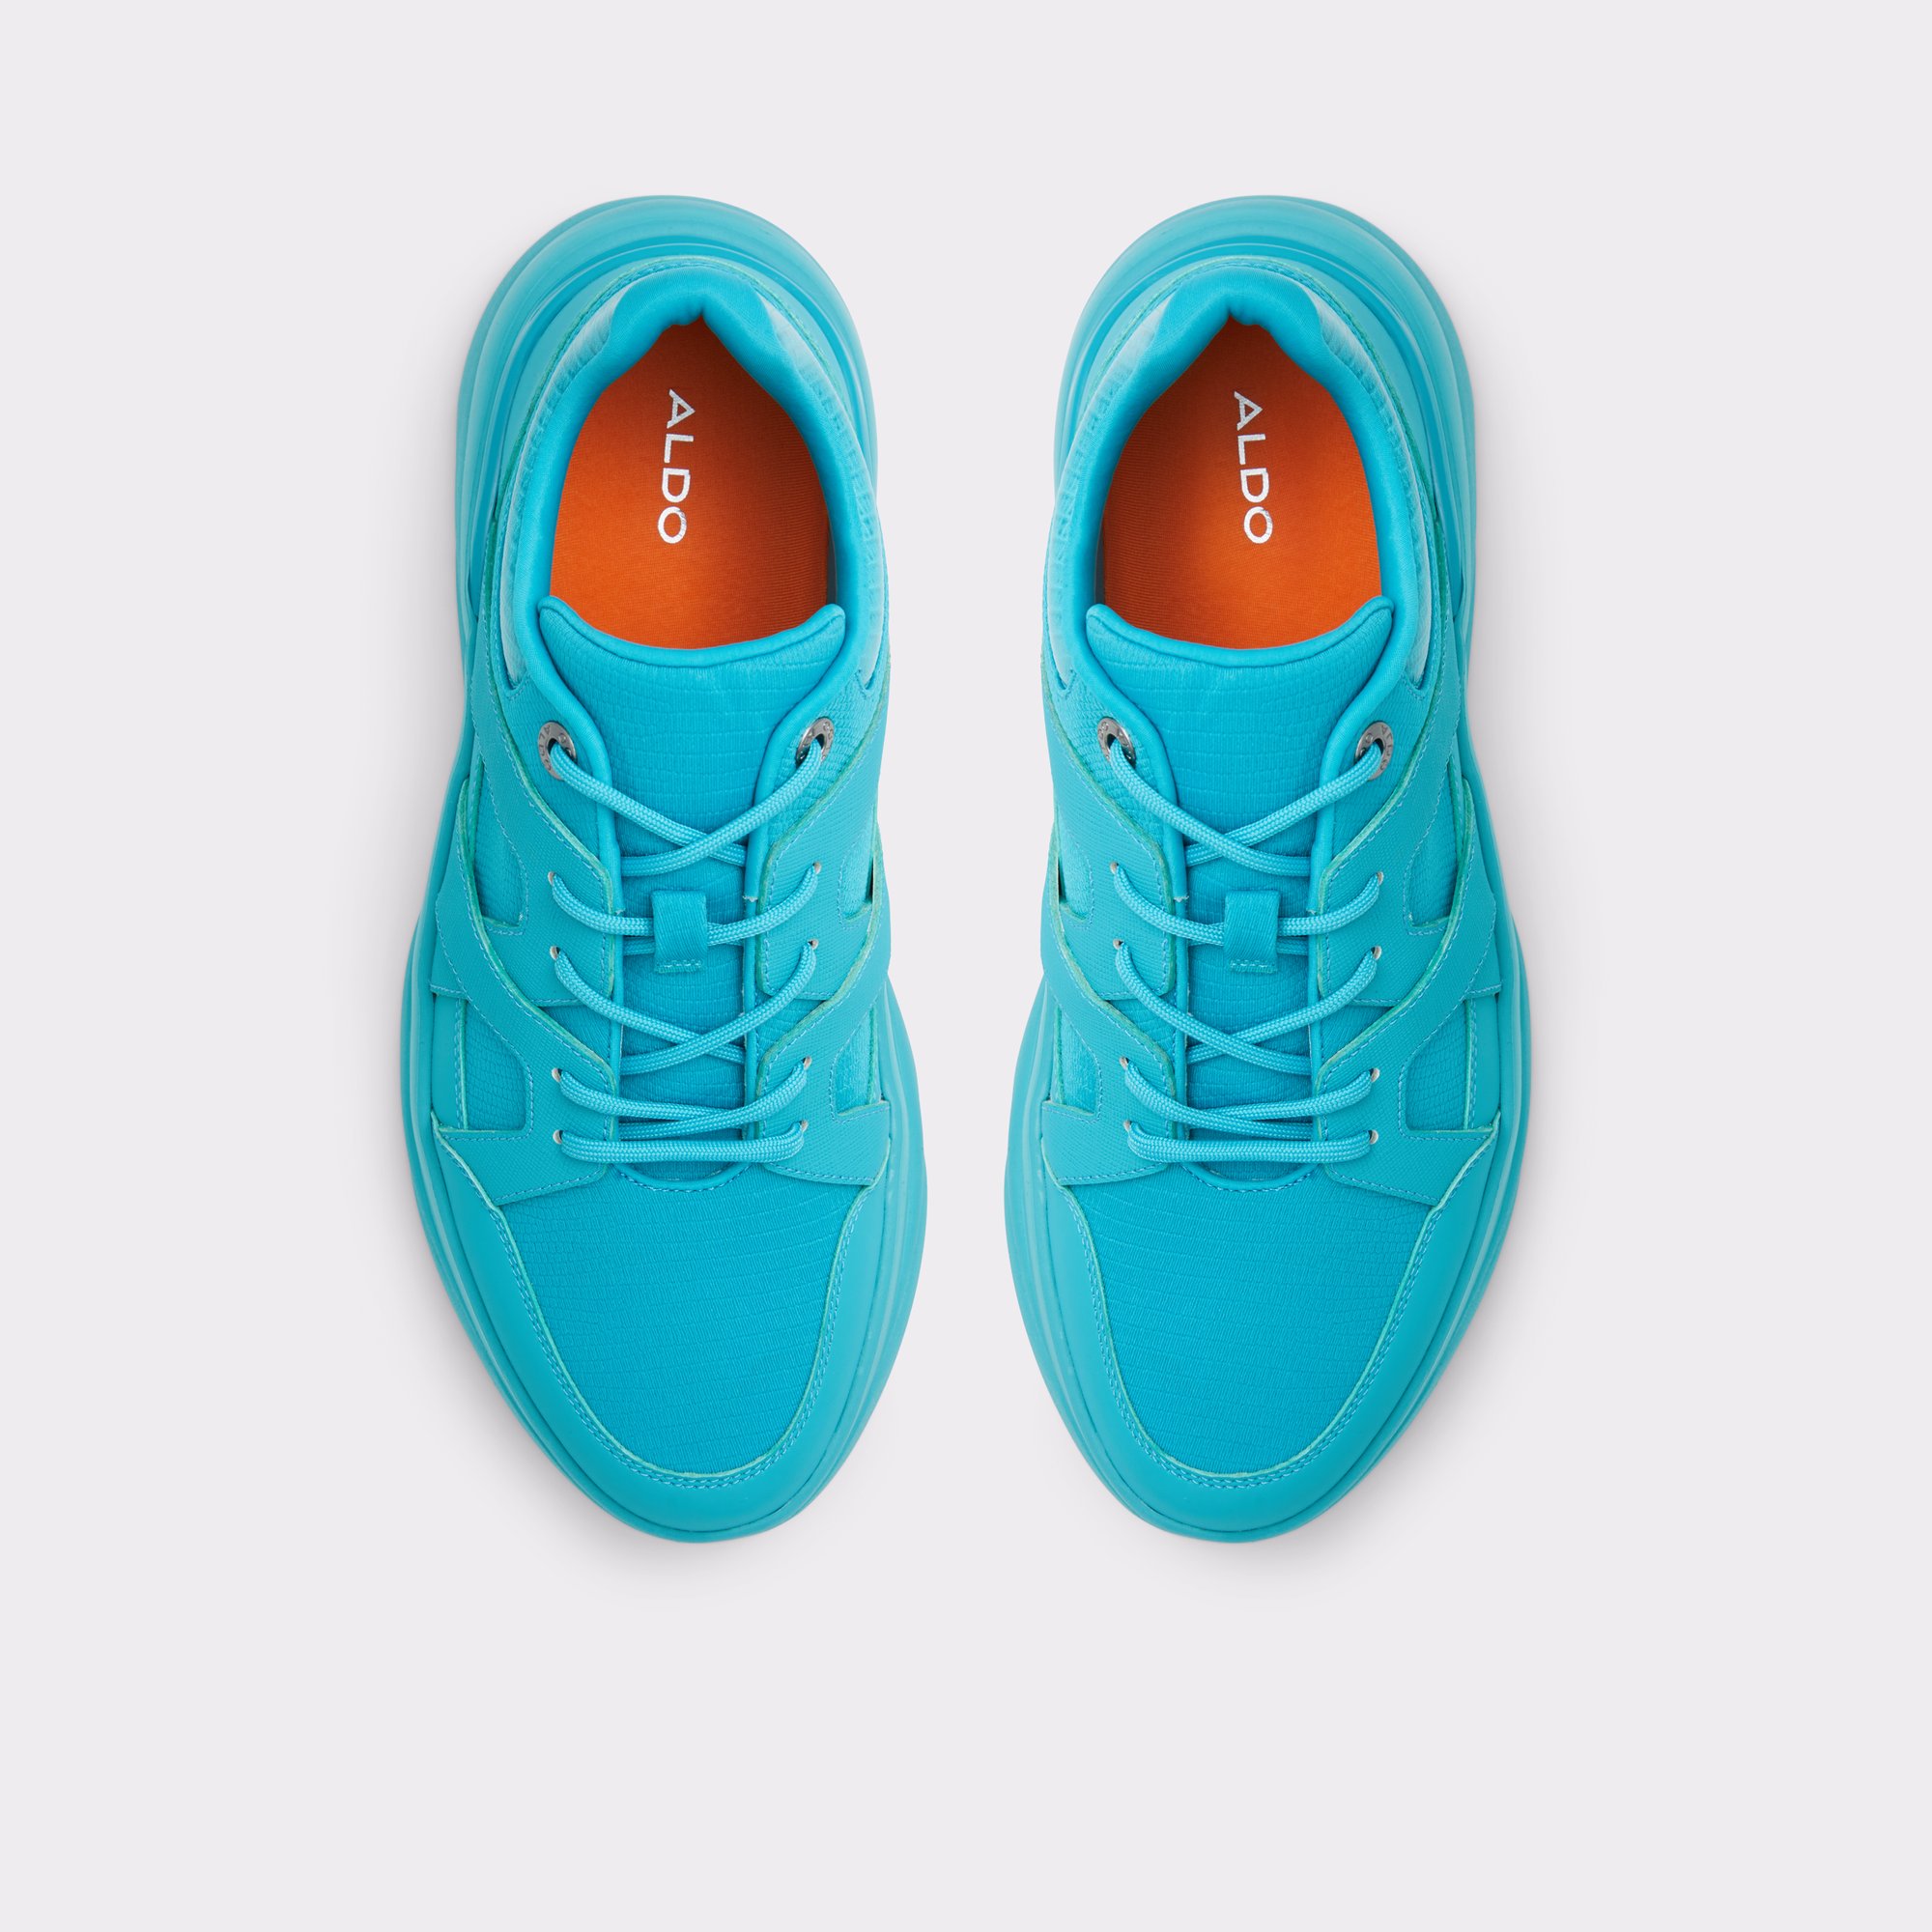 Quicklane Turquoise Men's Athletic sneakers | ALDO Canada